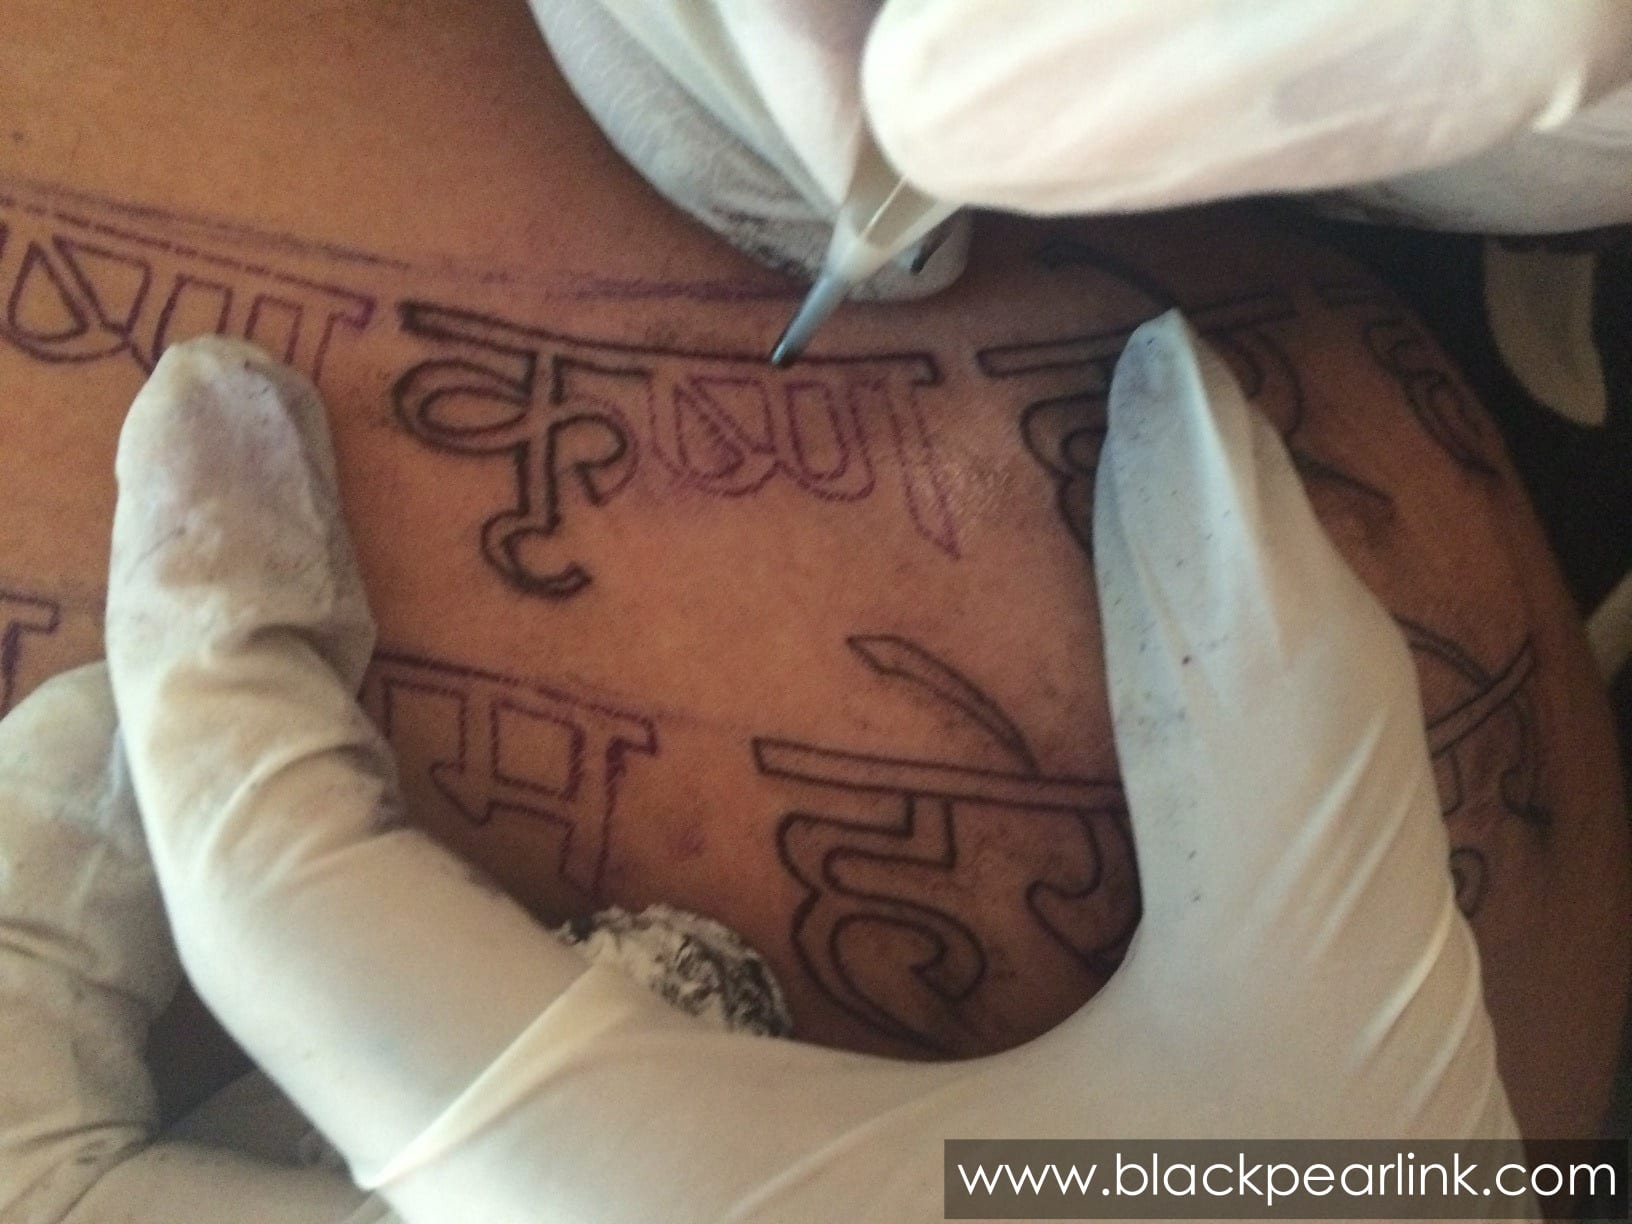 tattoo | Tumblr | Hand tattoos for girls, Sleeve tattoos, Tattoos